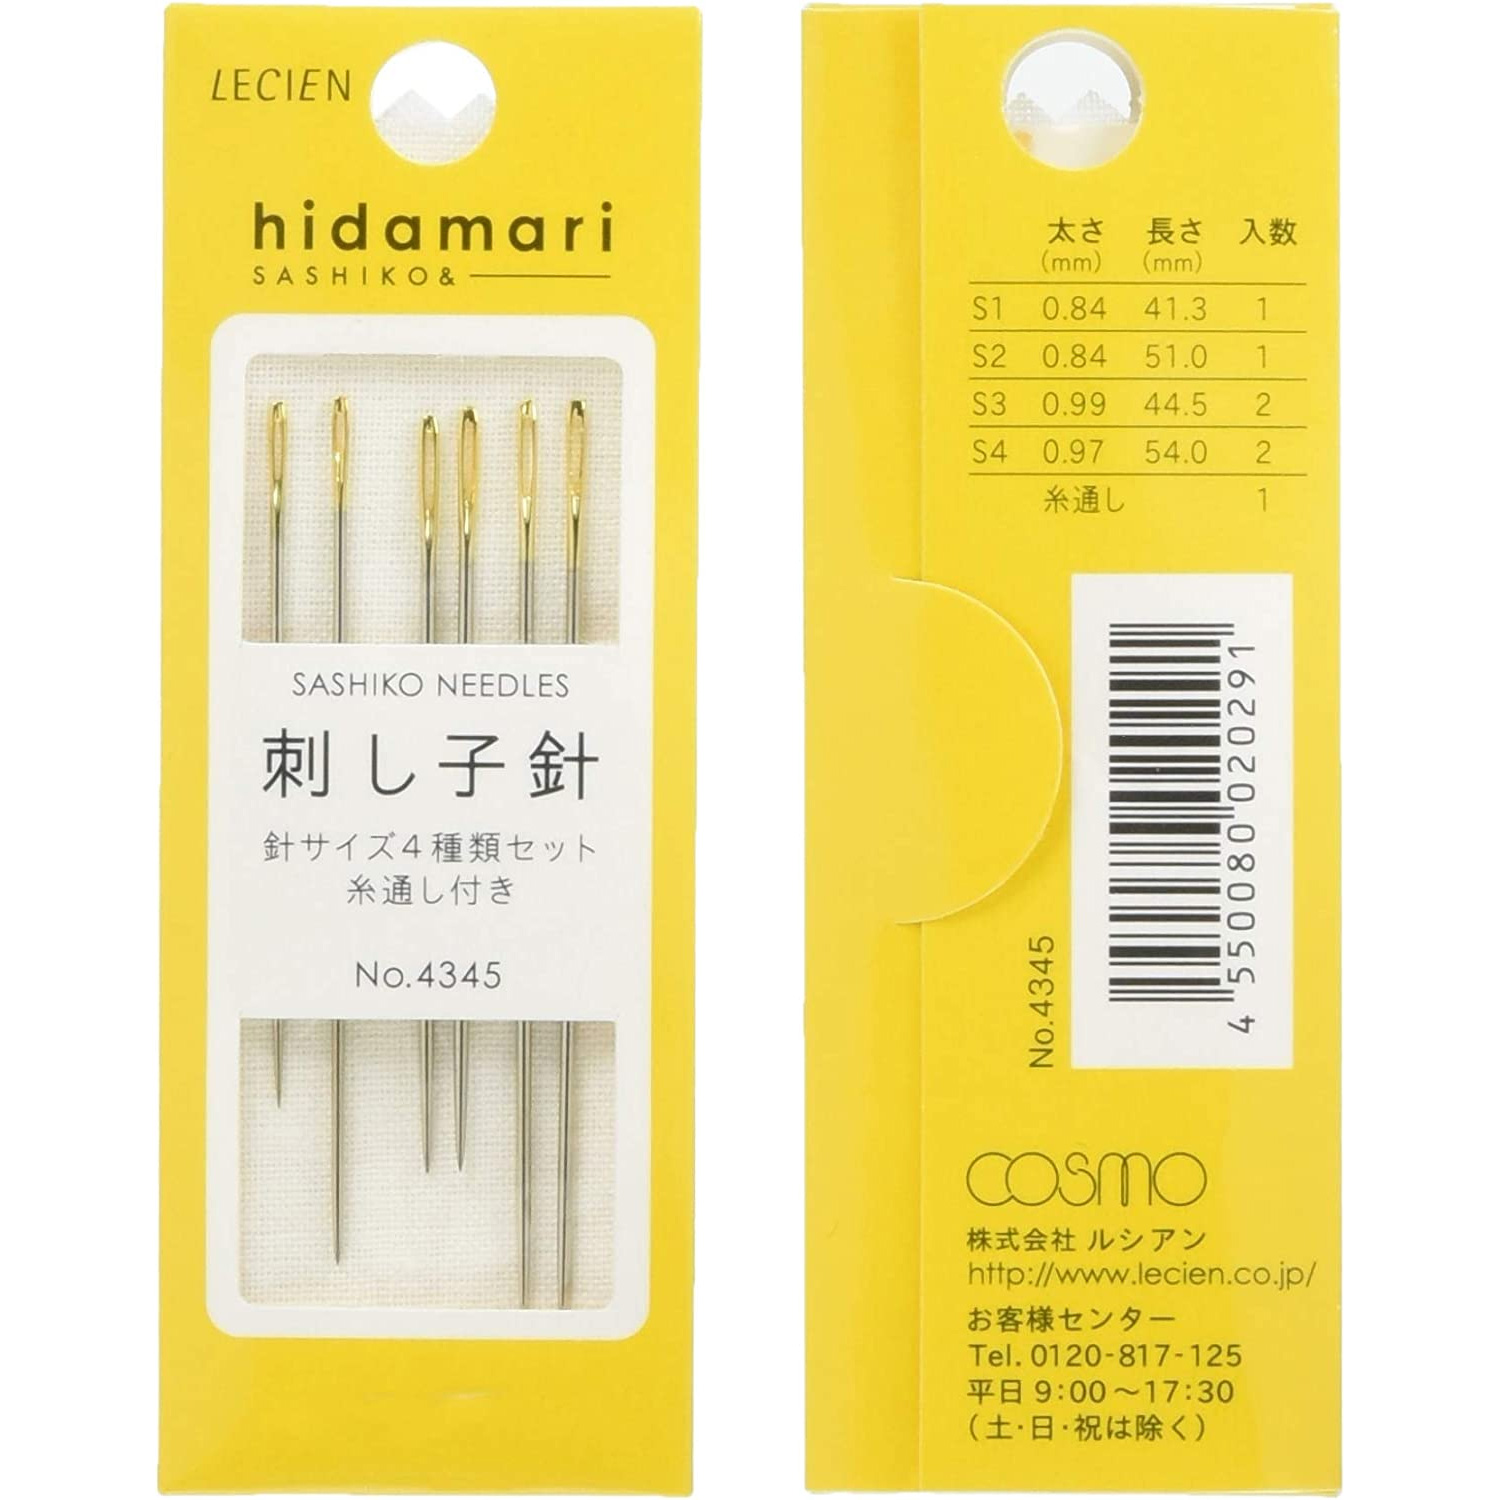 COT4345 コスモ 刺し子針 - hidamari - (枚)